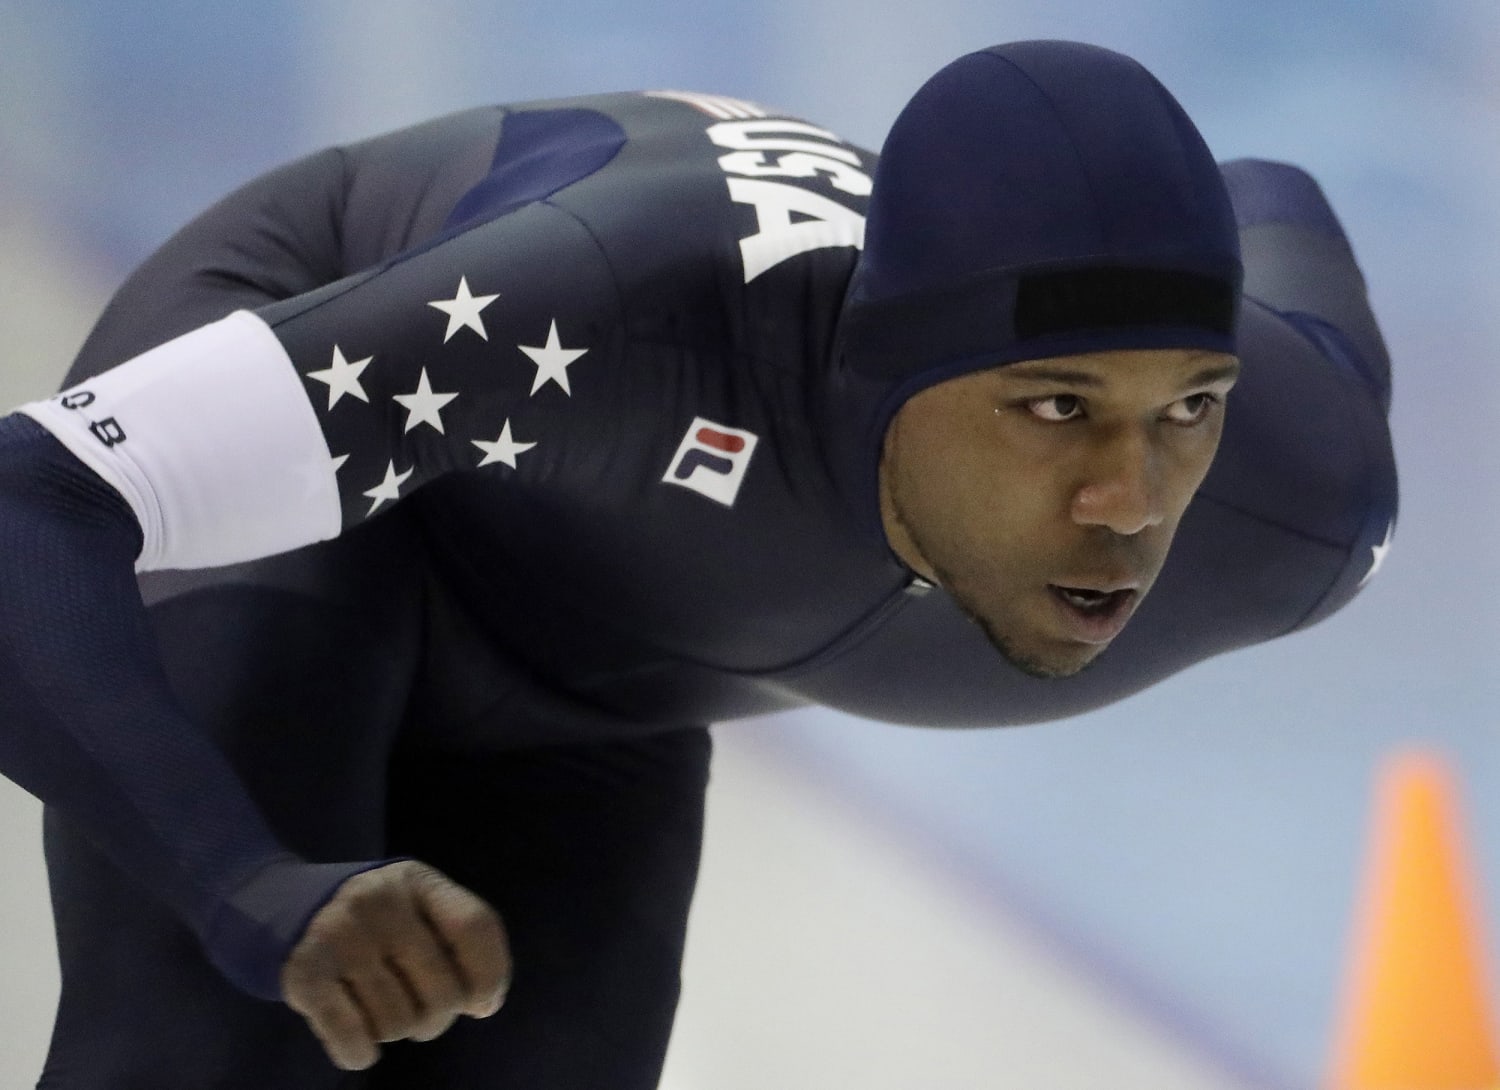 Seven black athletes making history at the 2018 PyeongChang Winter Olympics